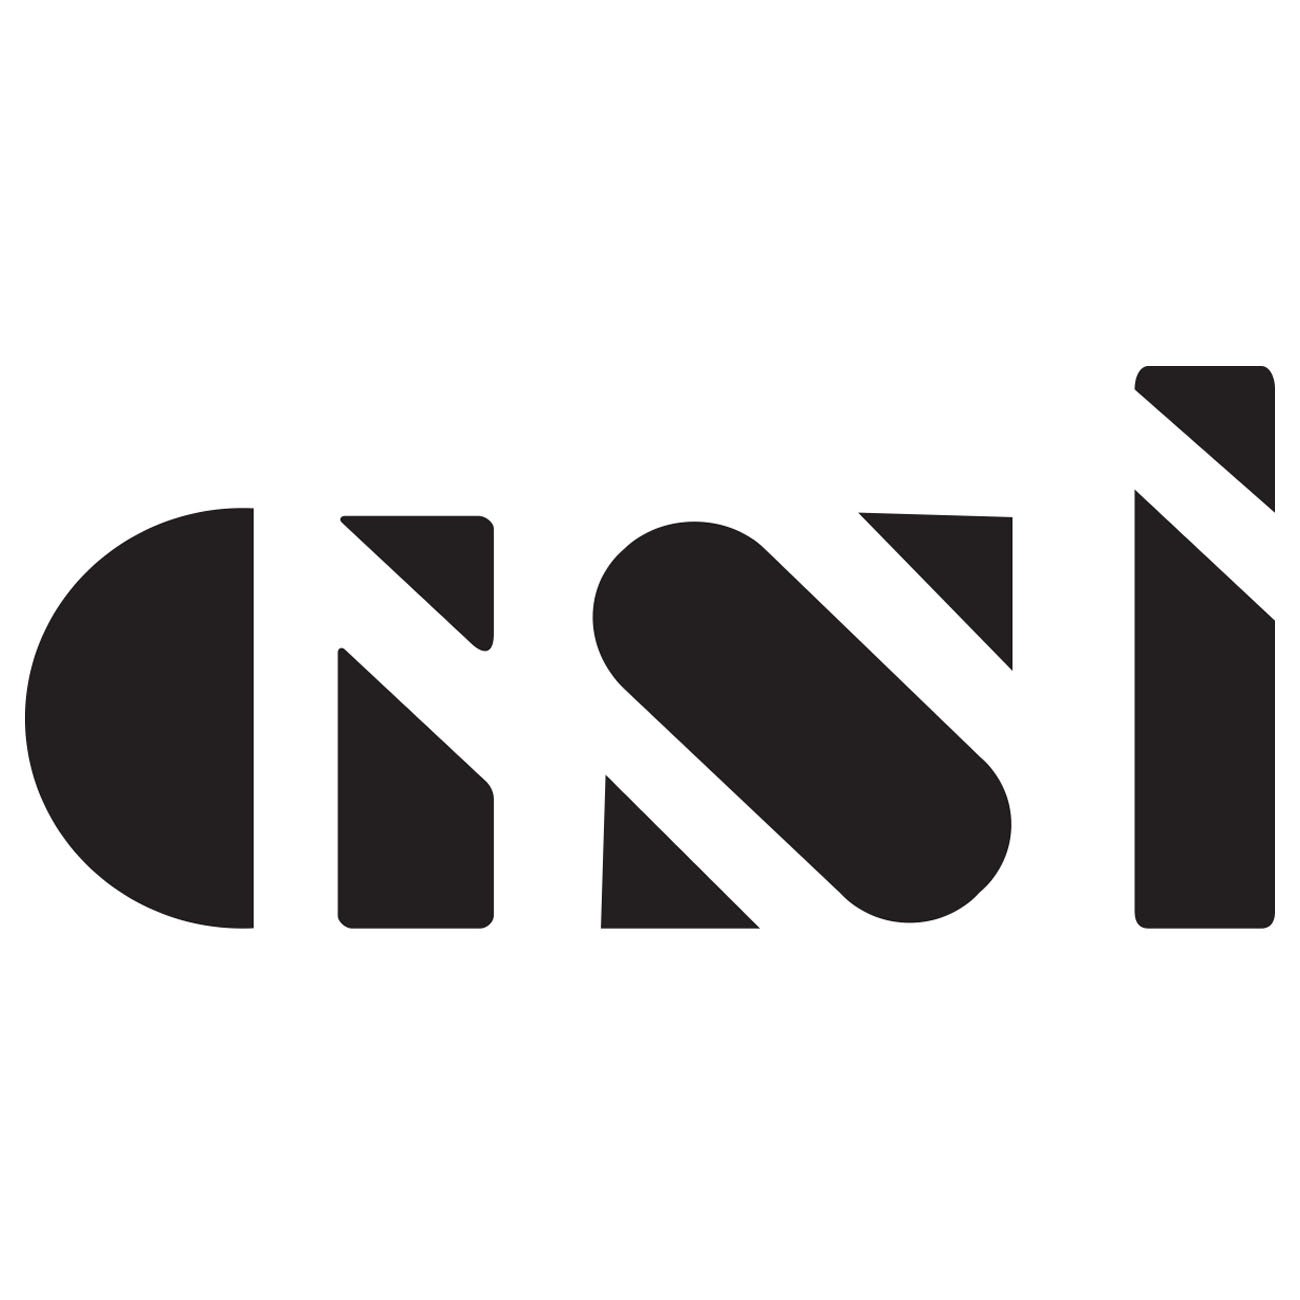 GSi logo